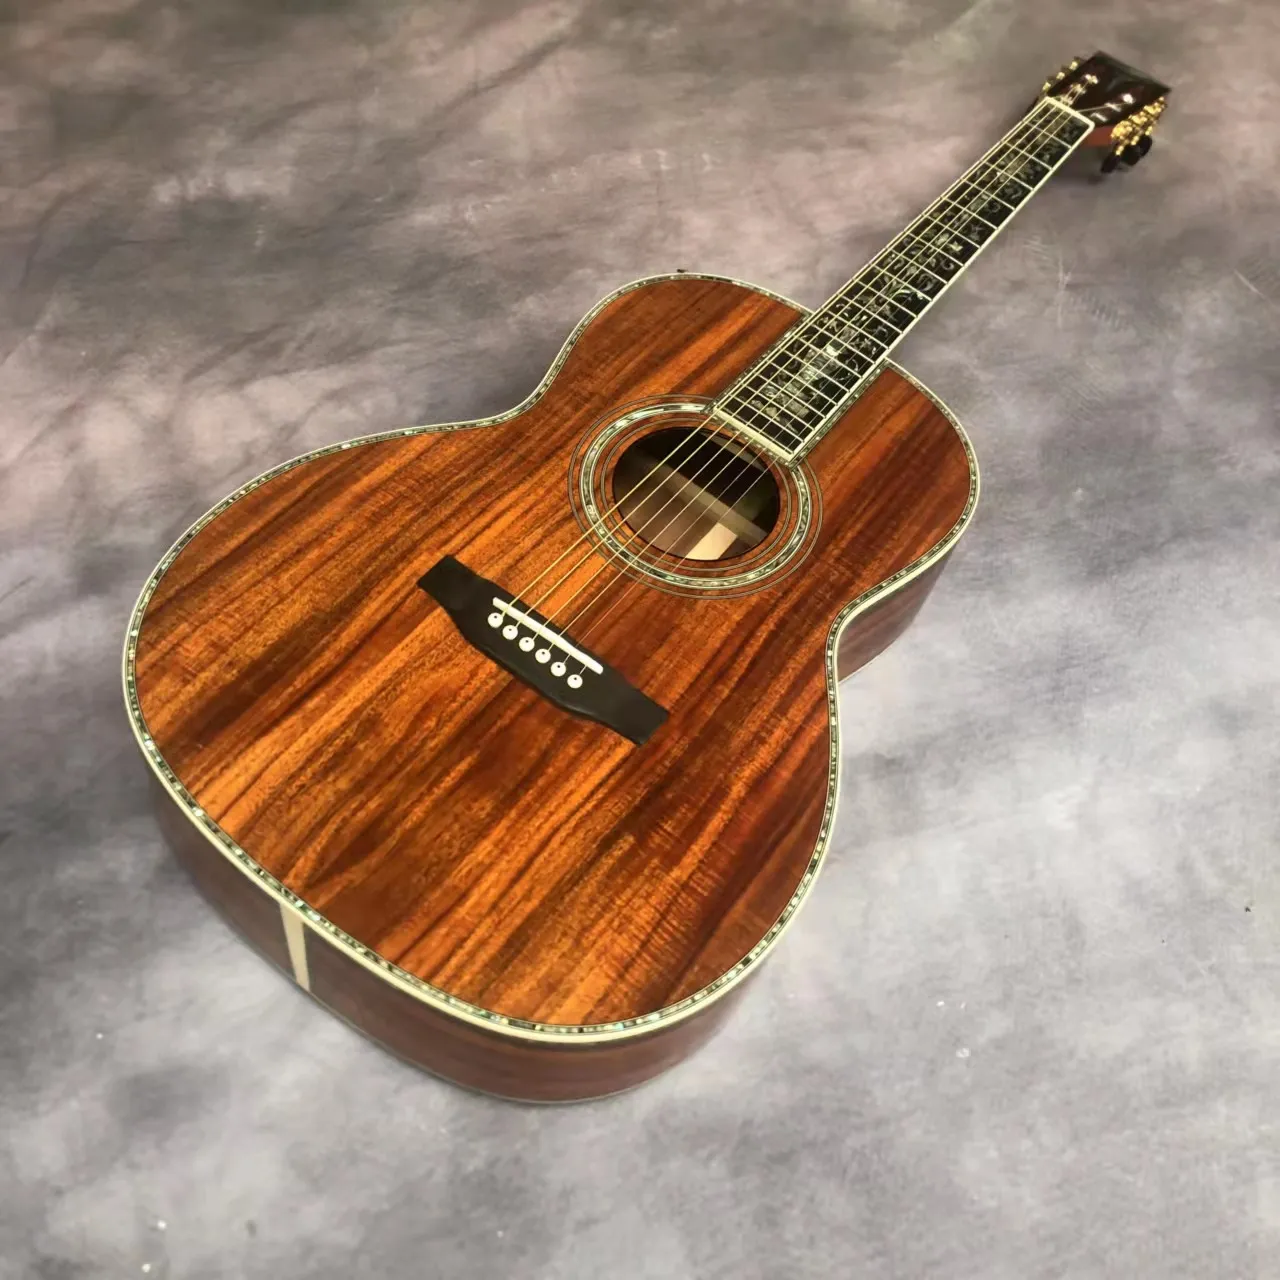 39 "Full Koa Wood 0045 Роскошные черные пальцы с нормой мозаика акустическая акустическая гитара